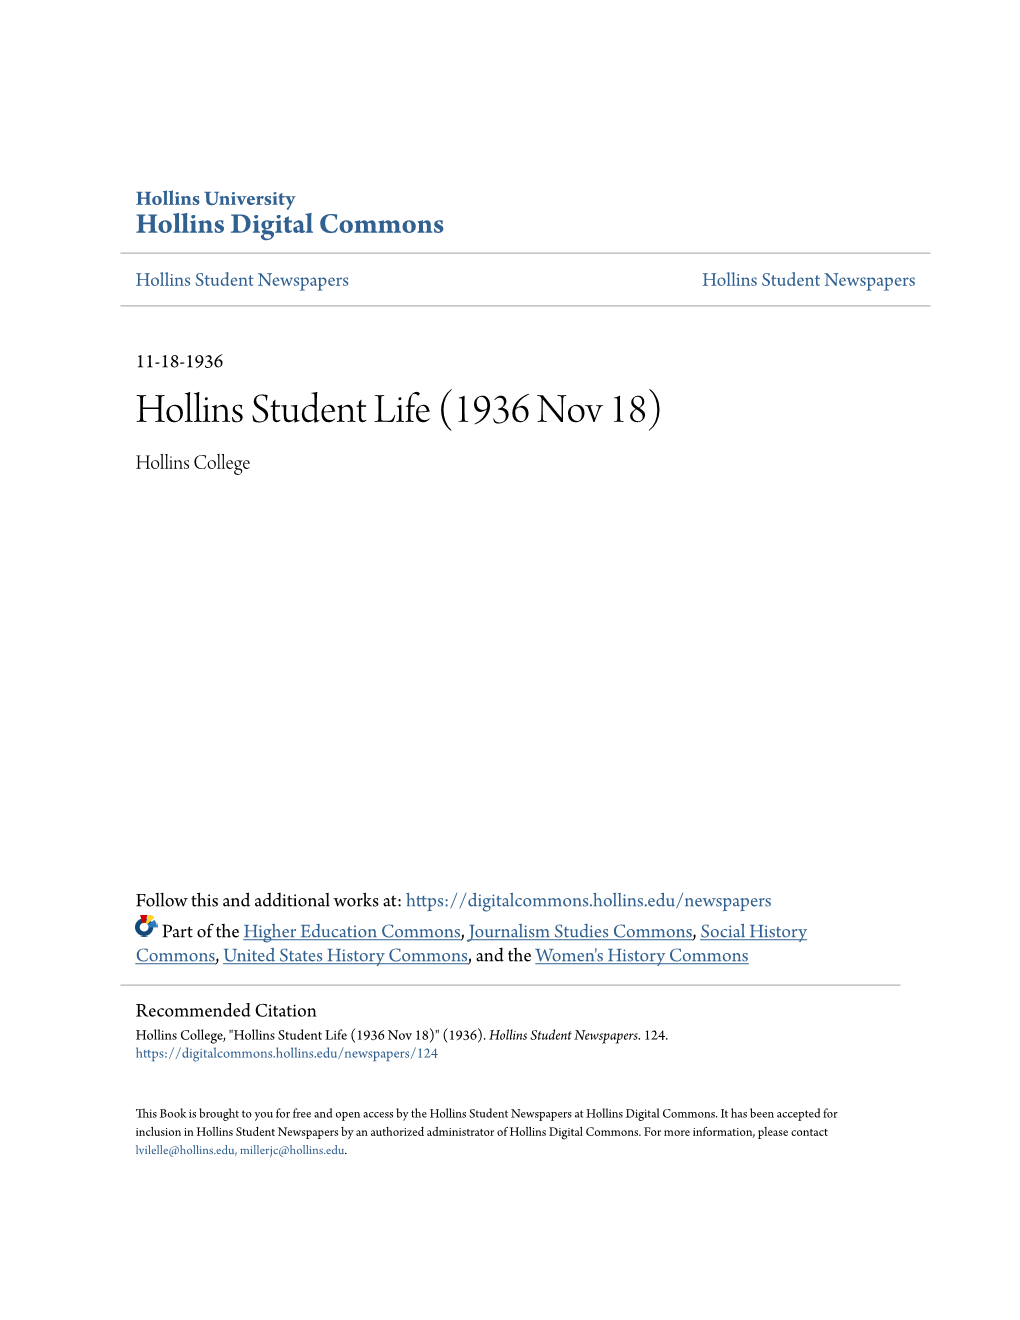 Hollins Student Life (1936 Nov 18) Hollins College